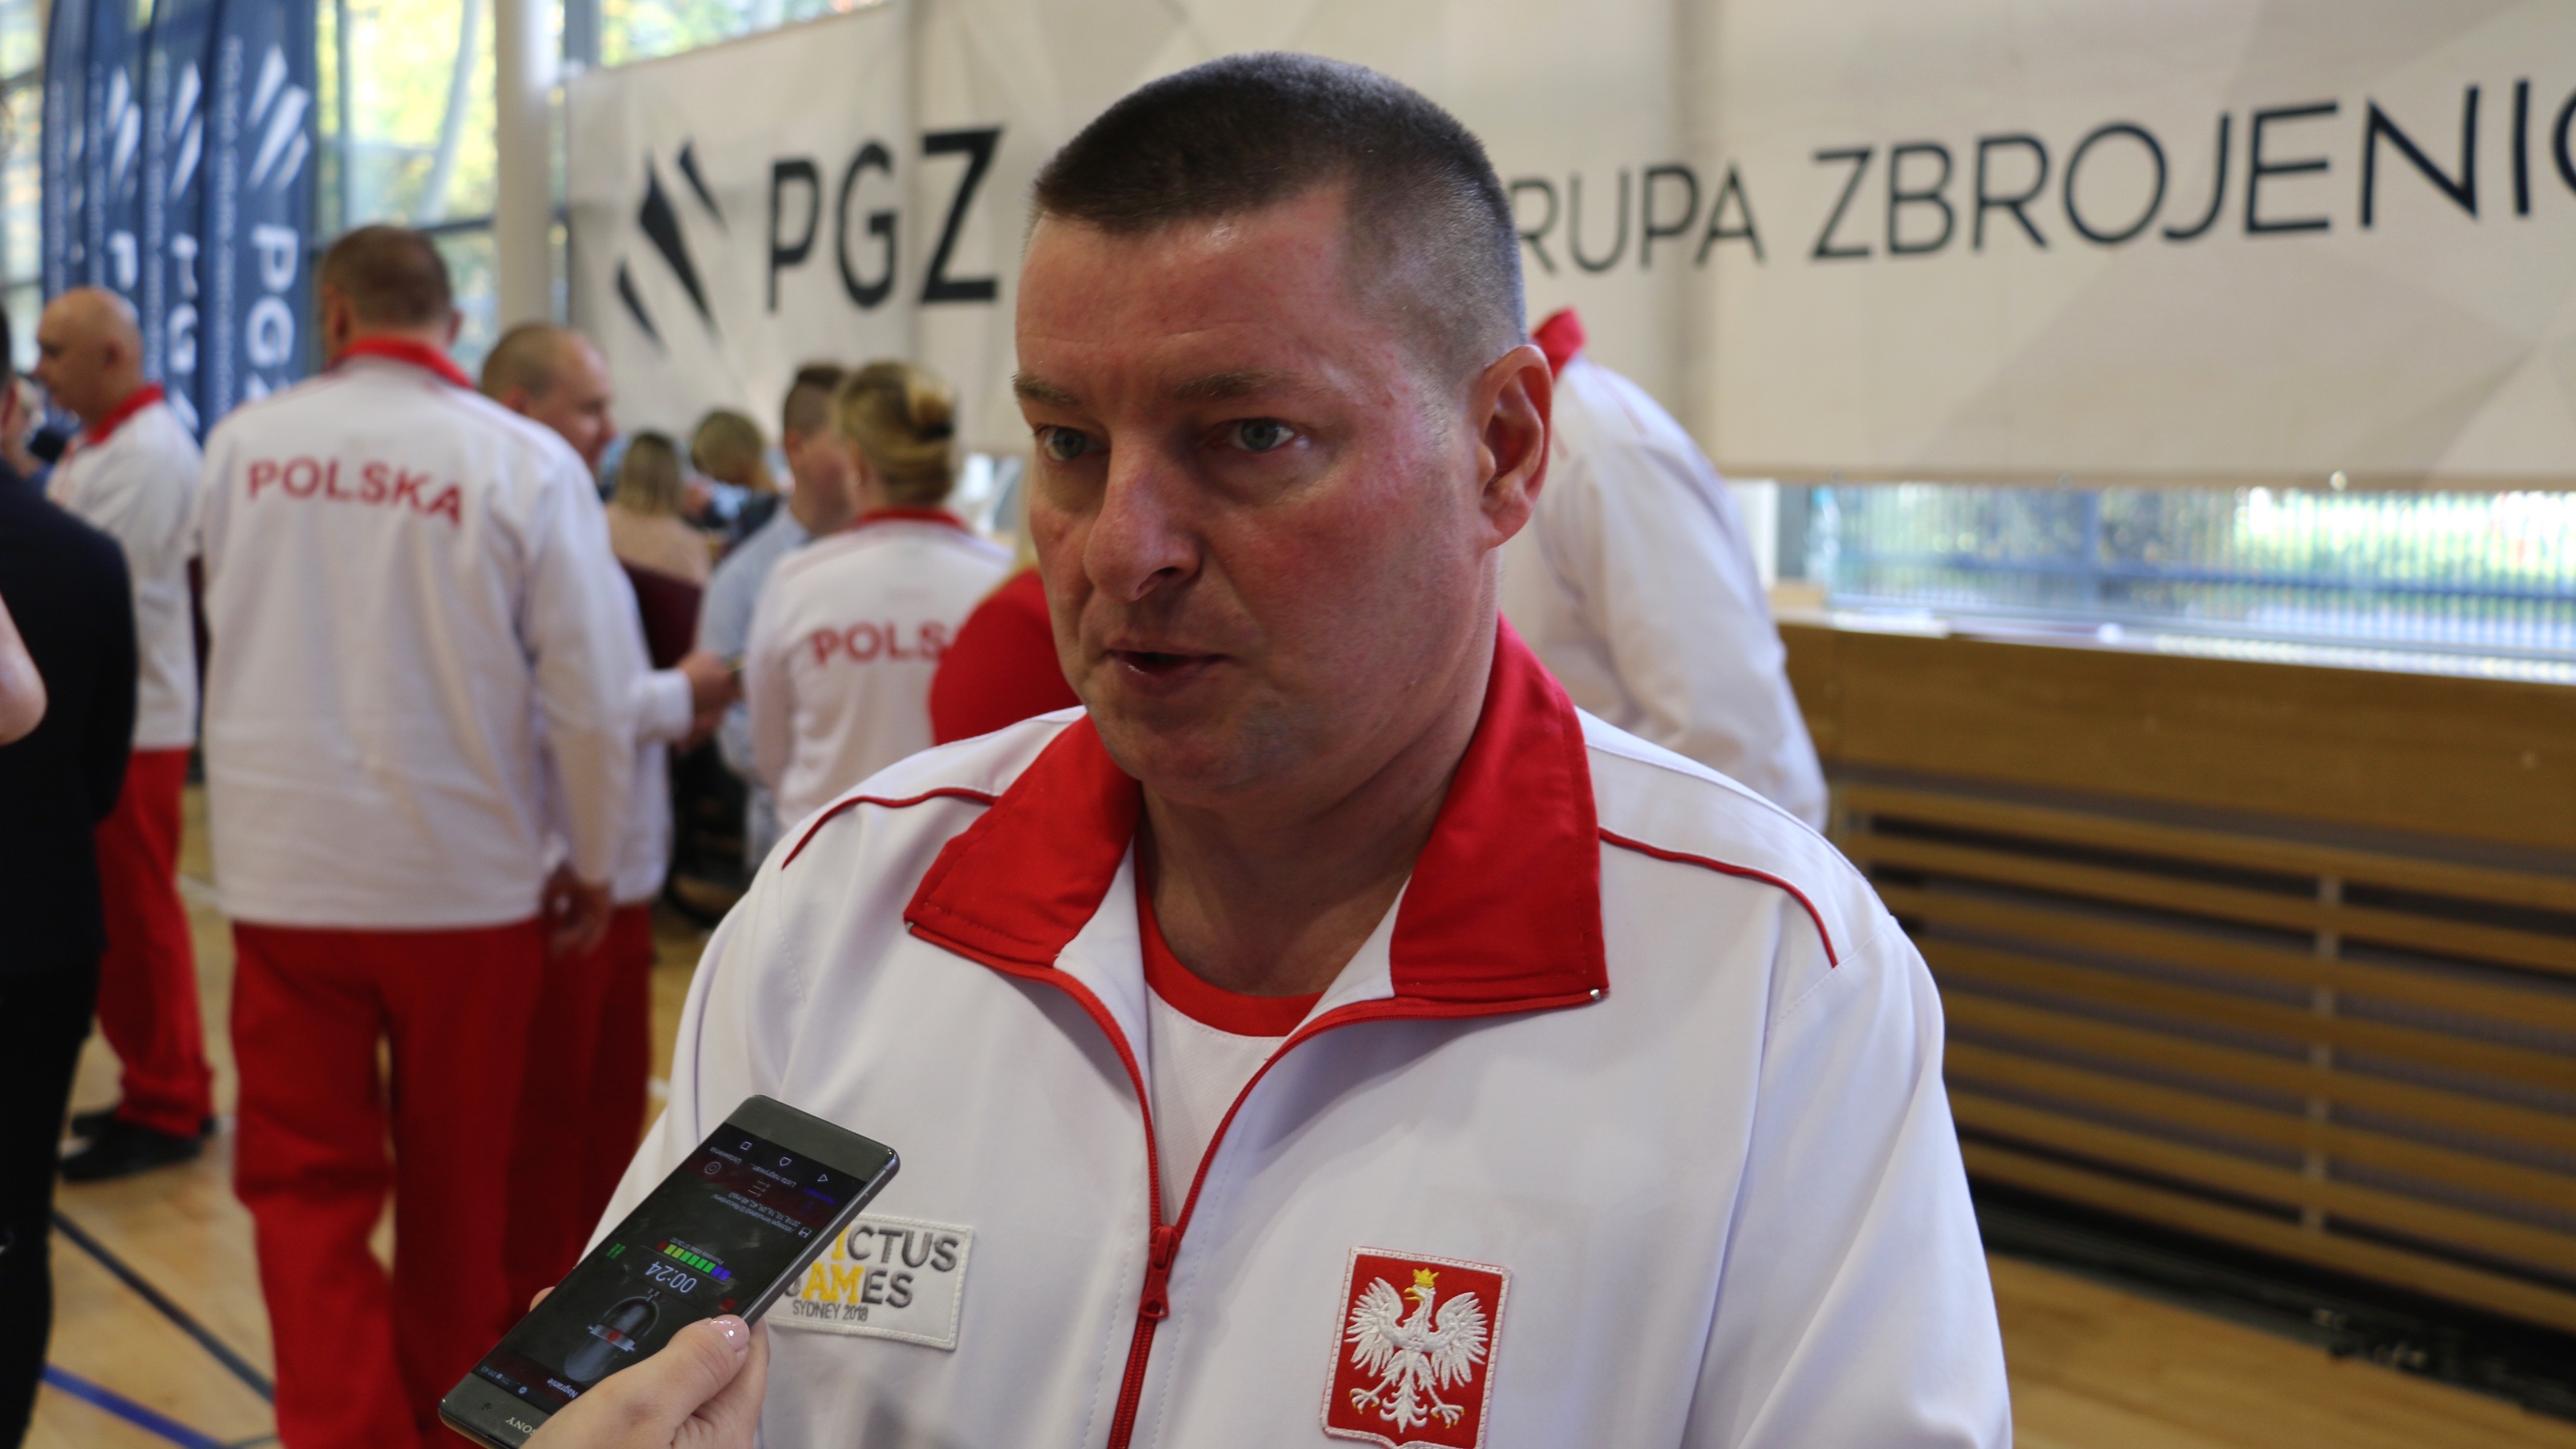 Sierż. Janusz Raczy. Fot. Rafał Lesiecki / Defence24.pl